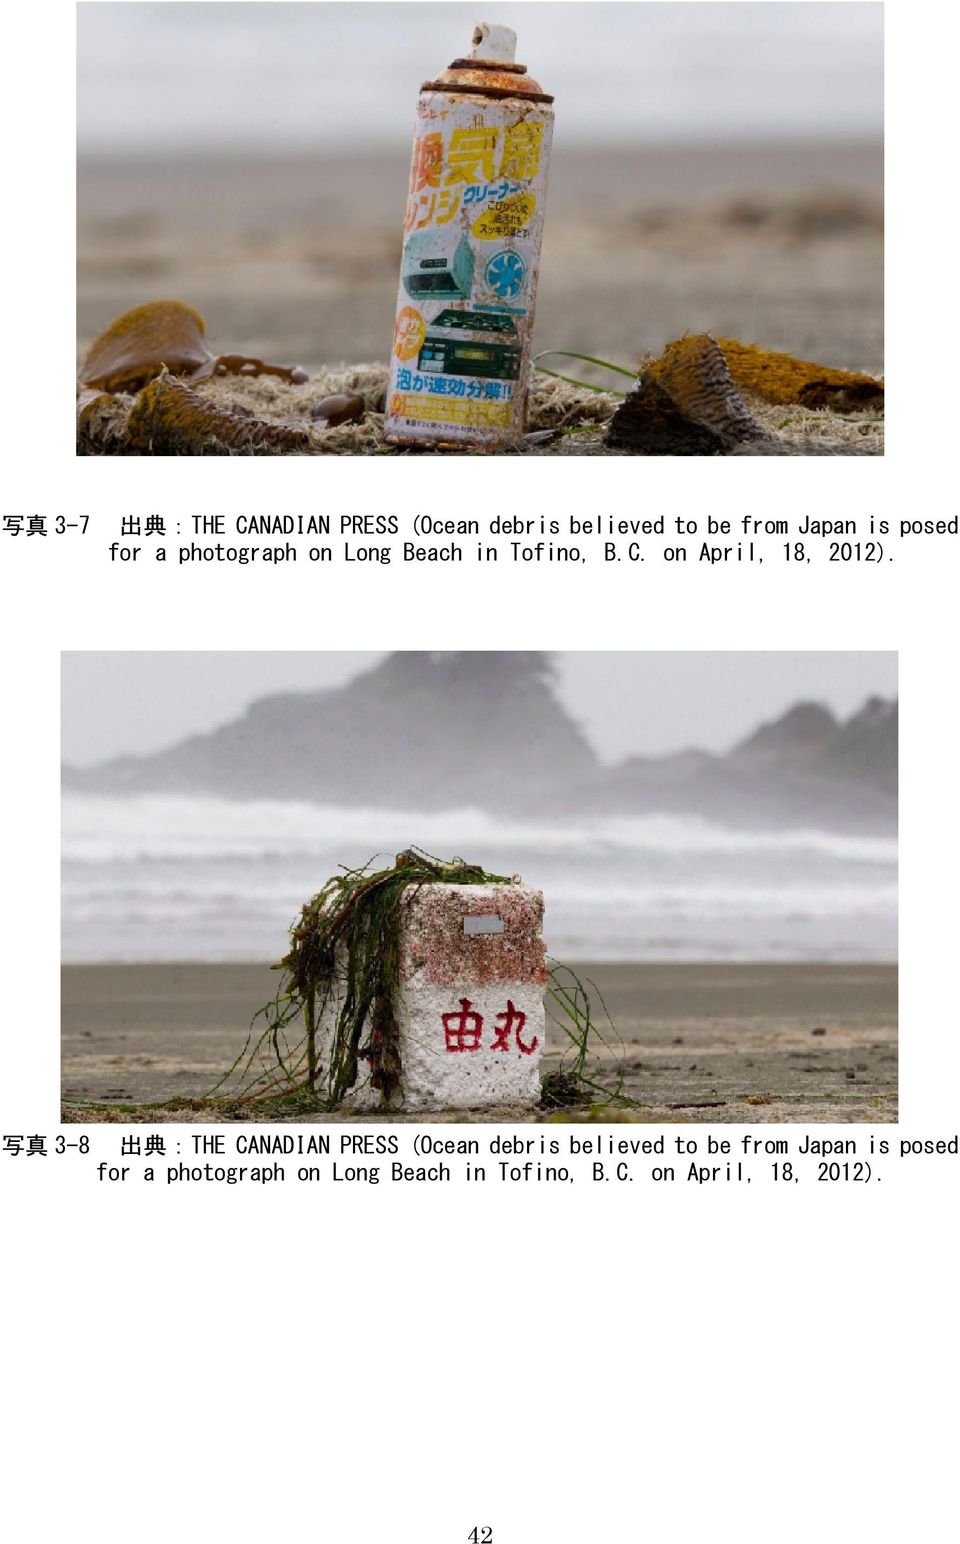 写 真 3-8 出 典 :THE CANADIAN PRESS (Ocean debris believed to be from Japan is